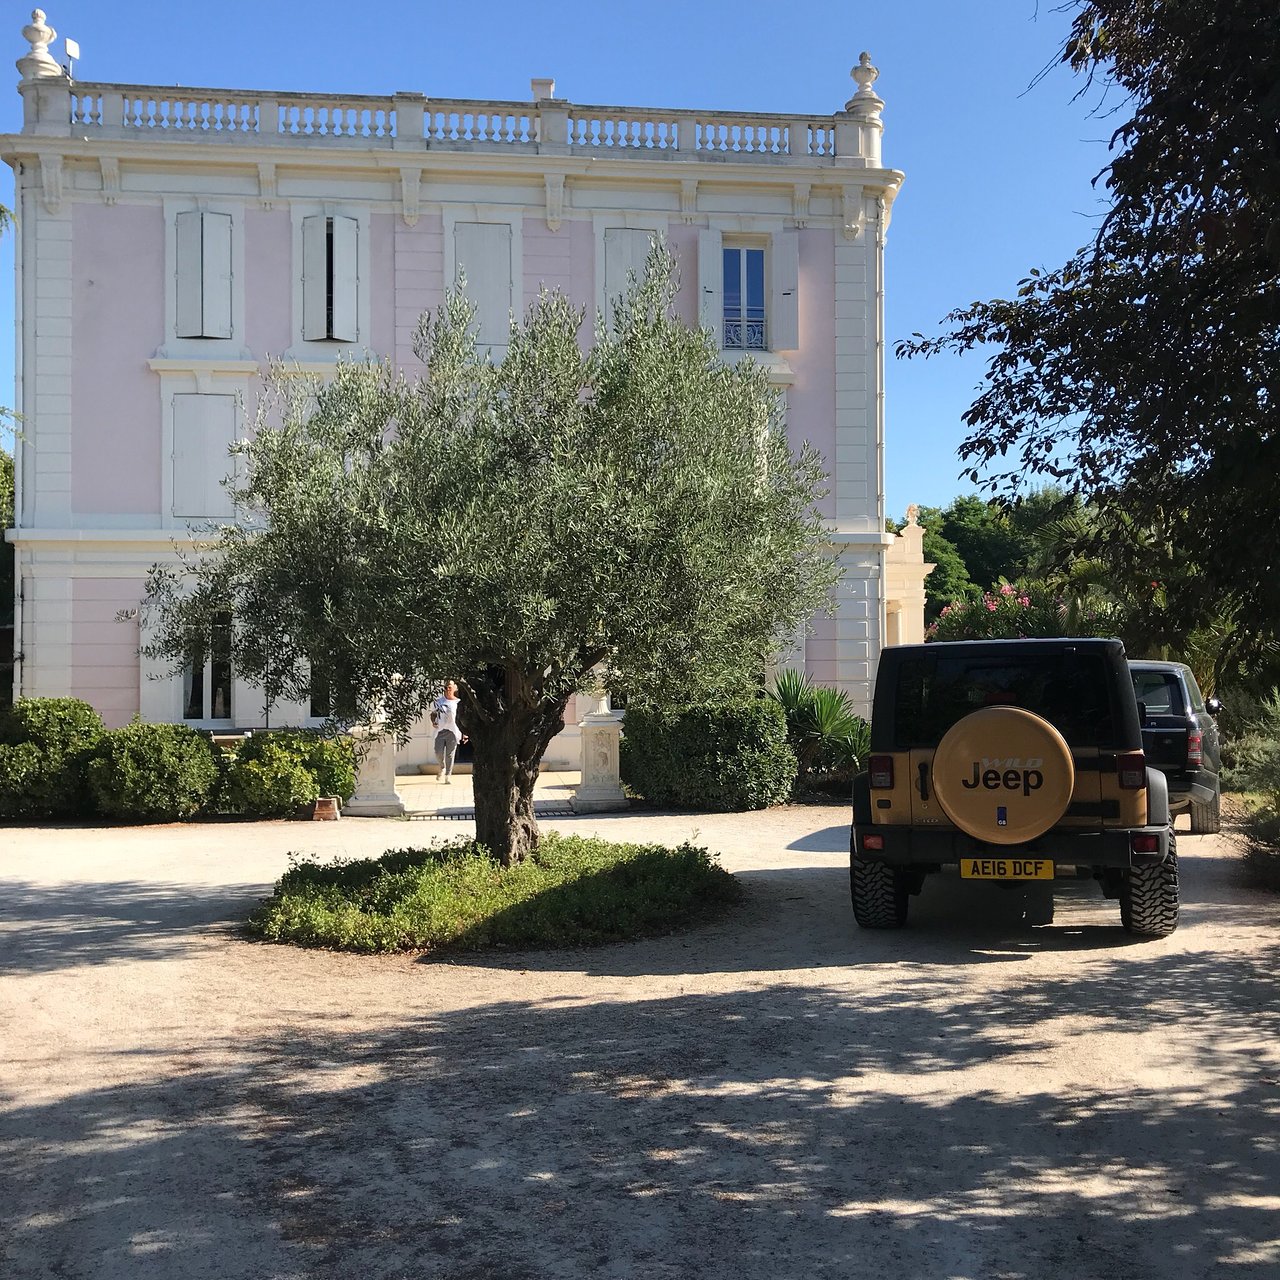 Le Jardin De Saint Adrien Best Of Chateau La Roque Margaux Servian Inn Reviews & S